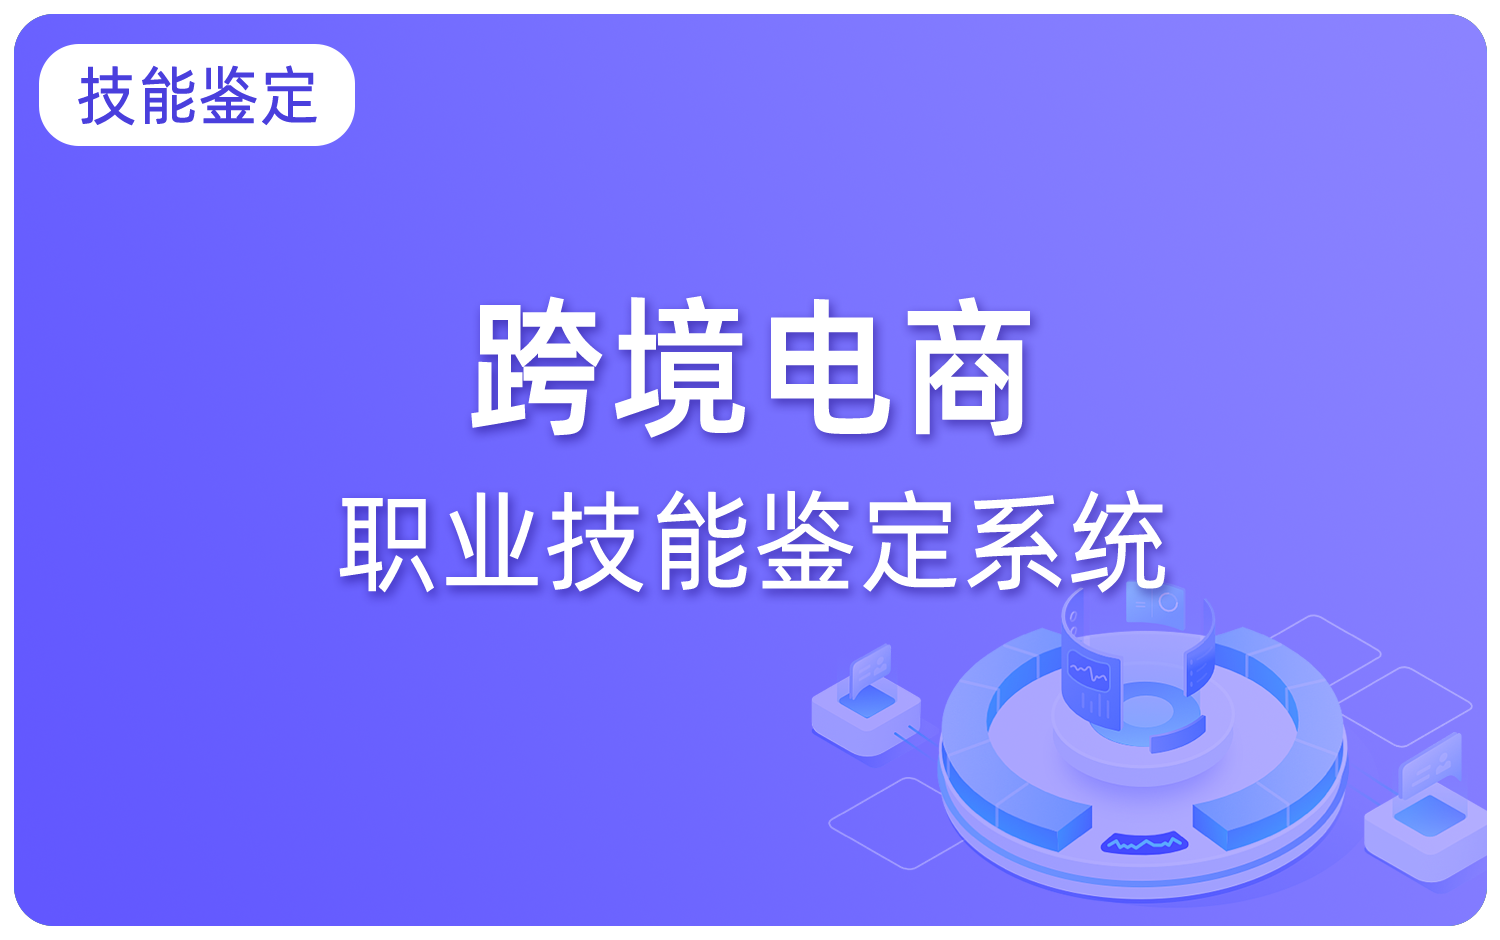 跨境電(diàn)商(shāng)职业技能(néng)鉴定系统